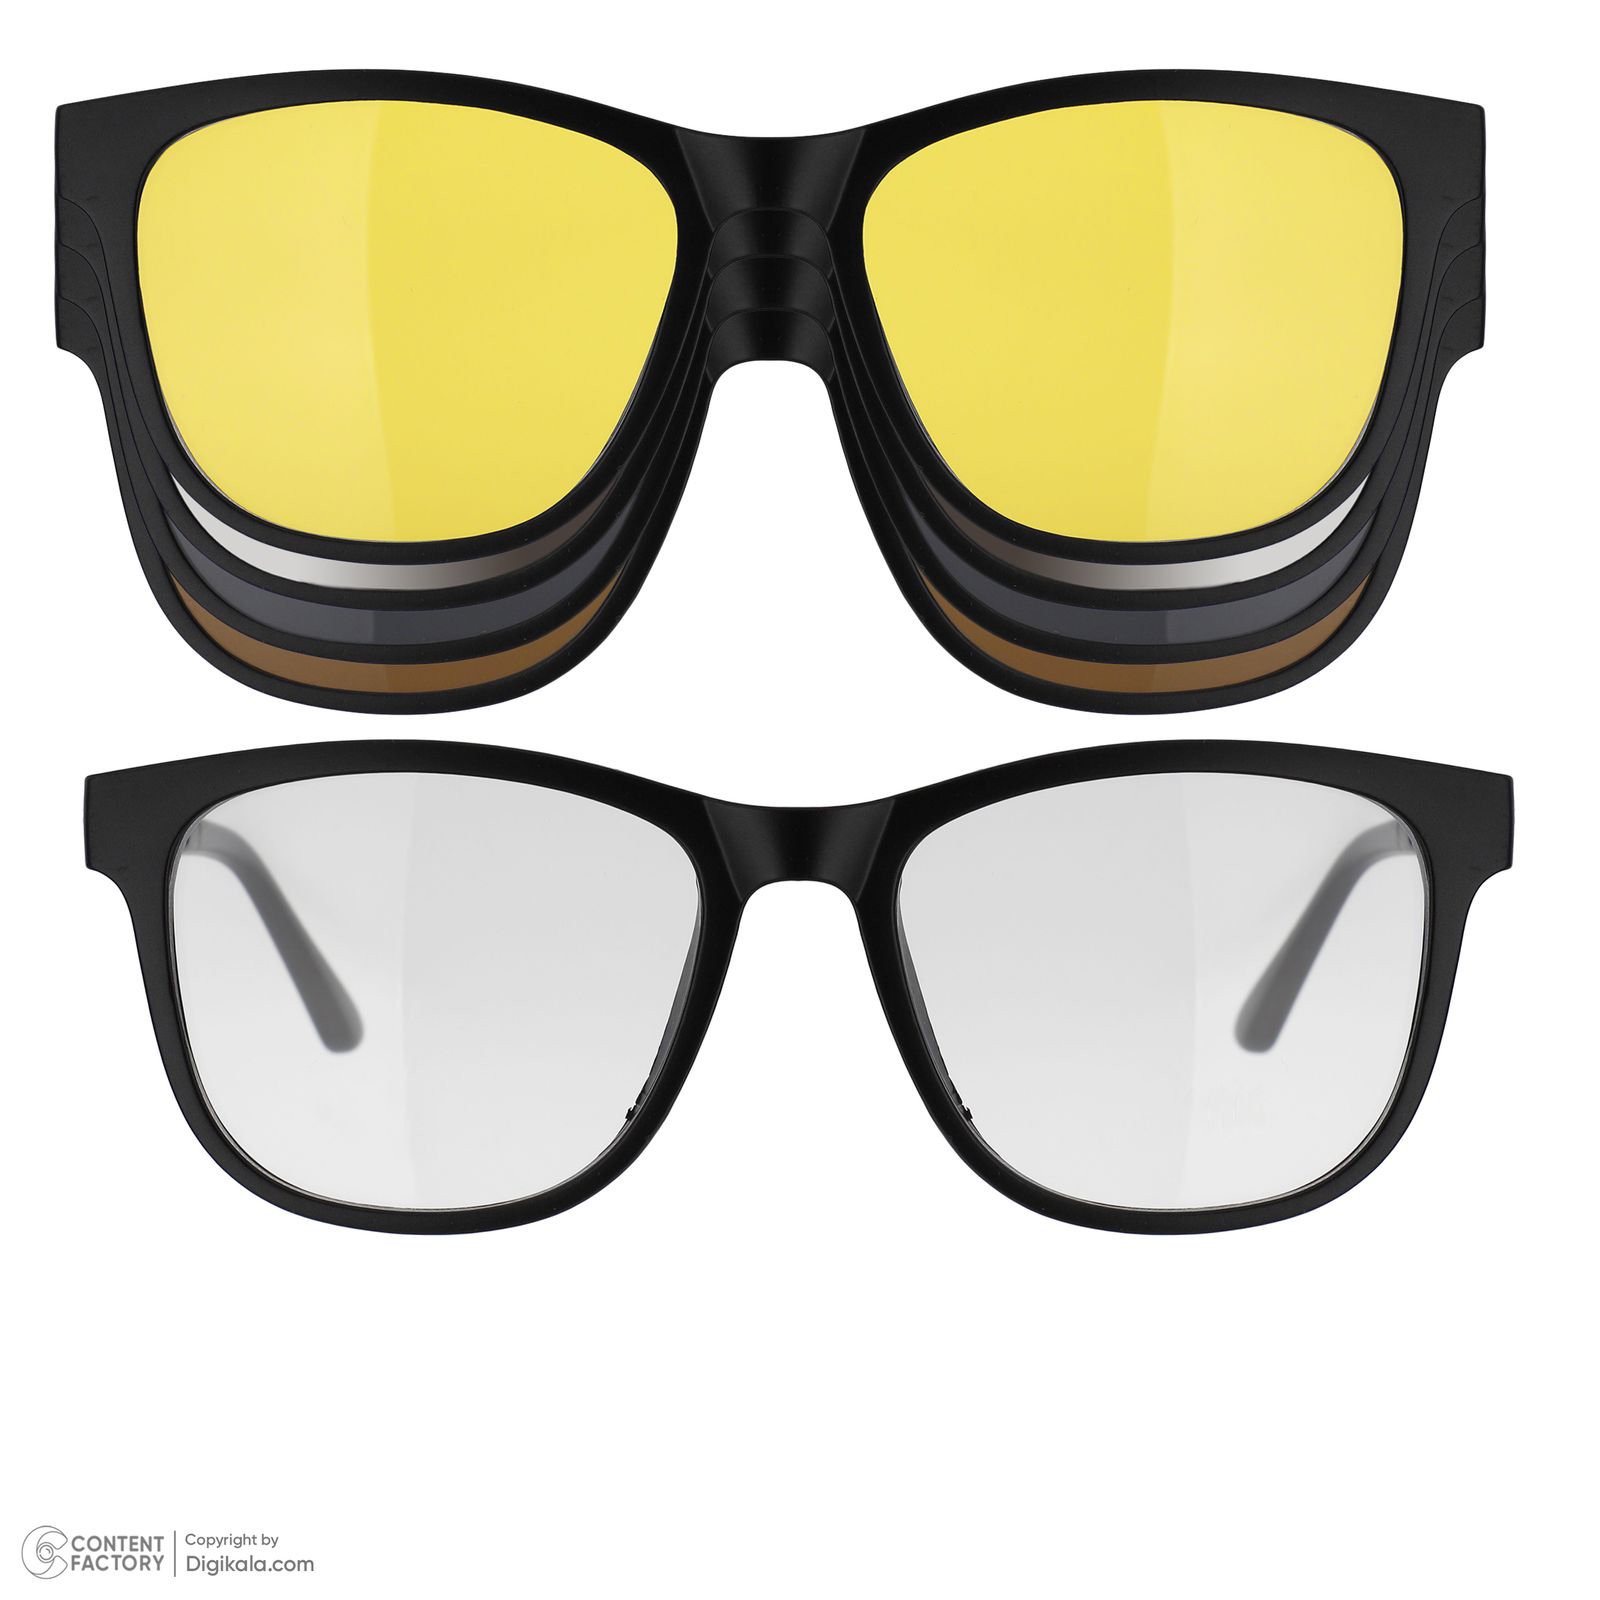 فریم عینک طبی دونیک مدل tr2230-c2 به همراه کاور آفتابی مجموعه 5 عددی -  - 2